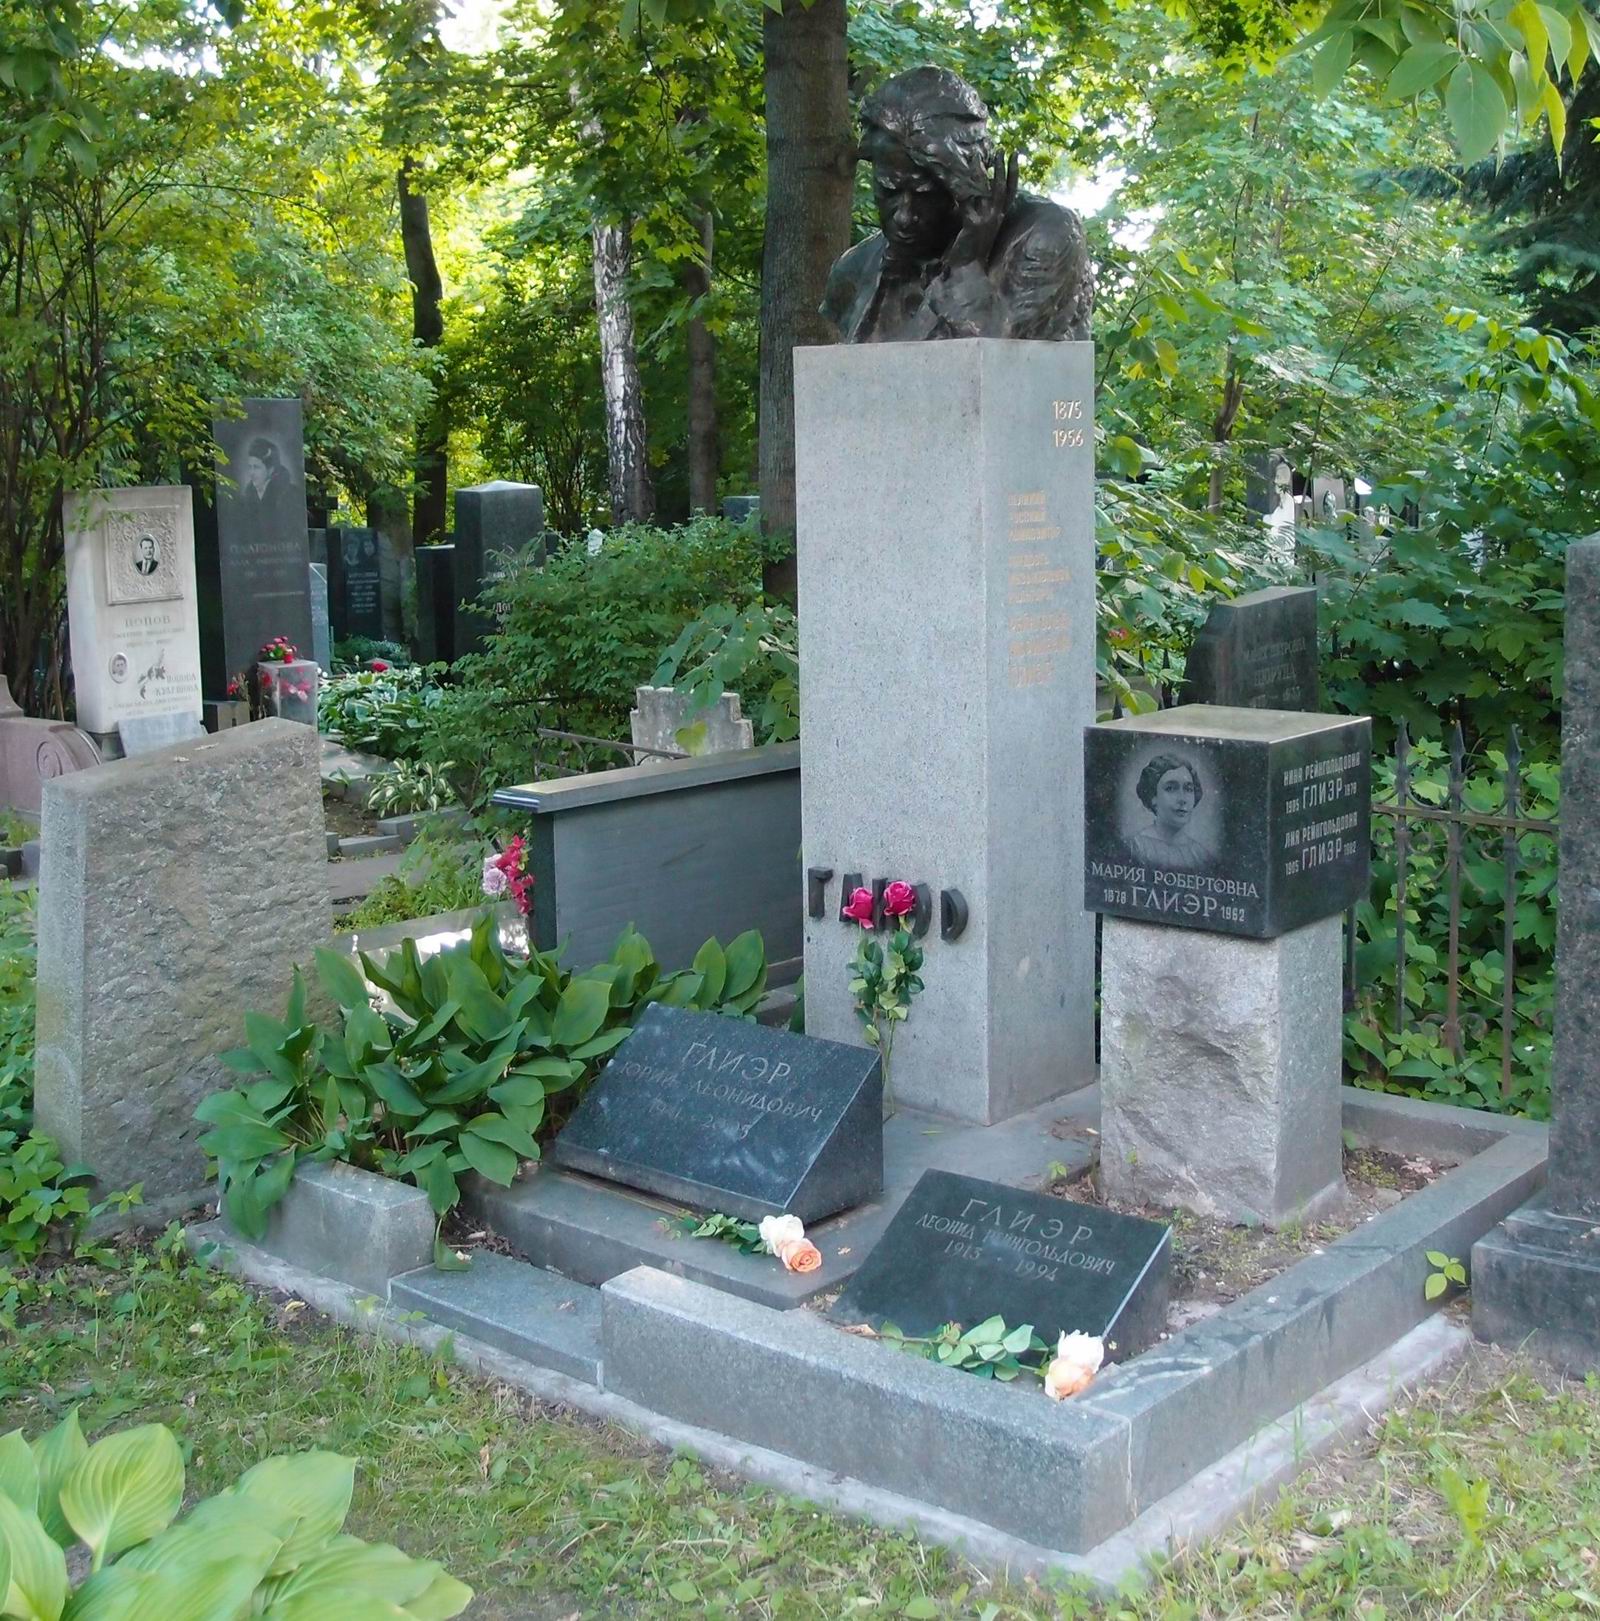 Памятник на могиле Глиэра Р.М. (1875–1956), ск. М.Аникушин, арх. В.Петров, на Новодевичьем кладбище (3–63–39а). Нажмите левую кнопку мыши чтобы увидеть фрагмент памятника.